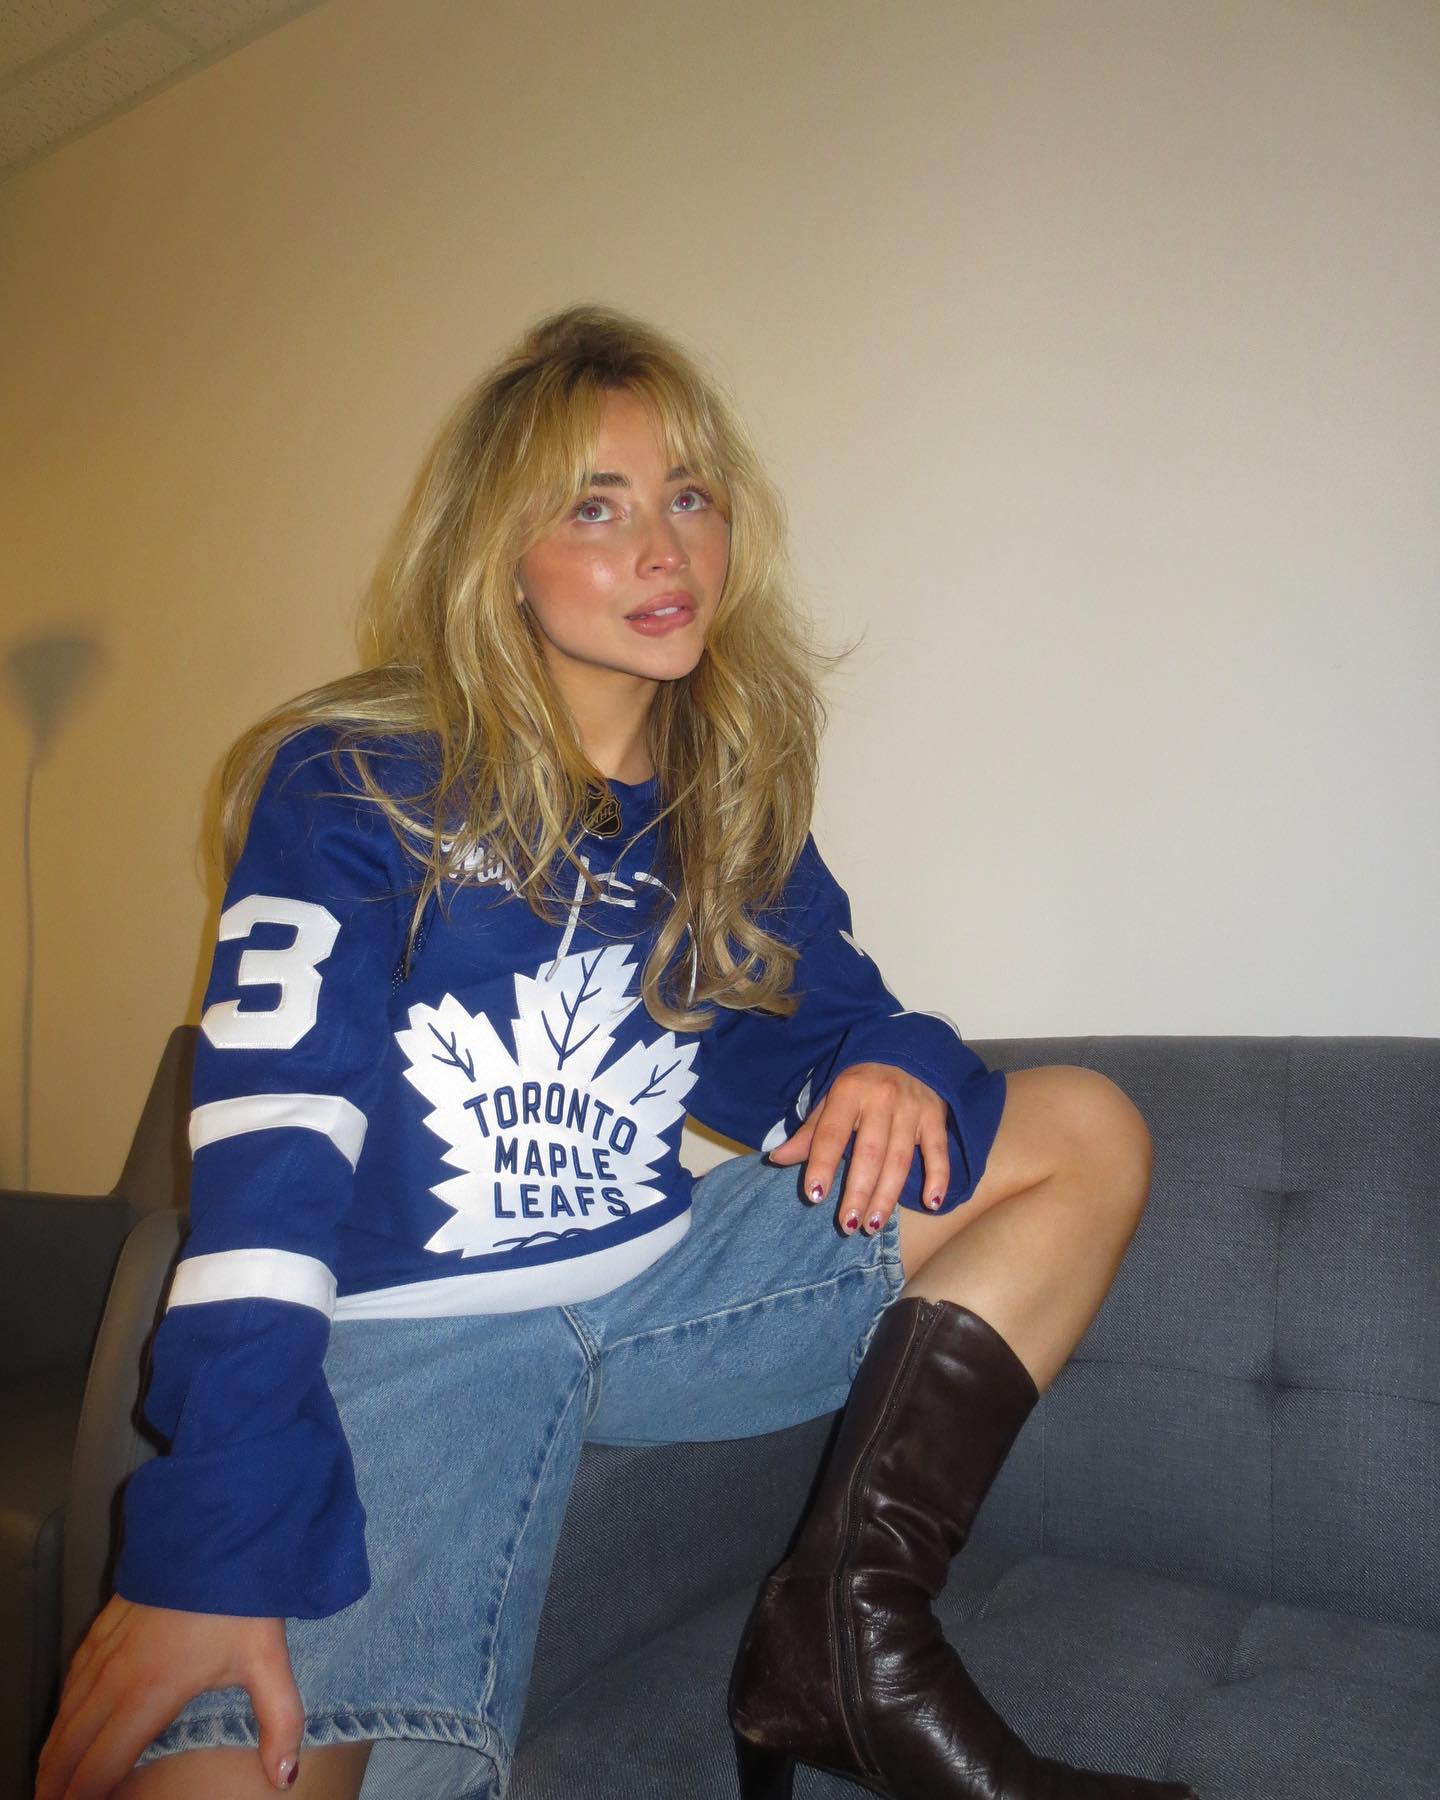 Photo n°1 : Sabrina Carpenter soutient les Leafs!